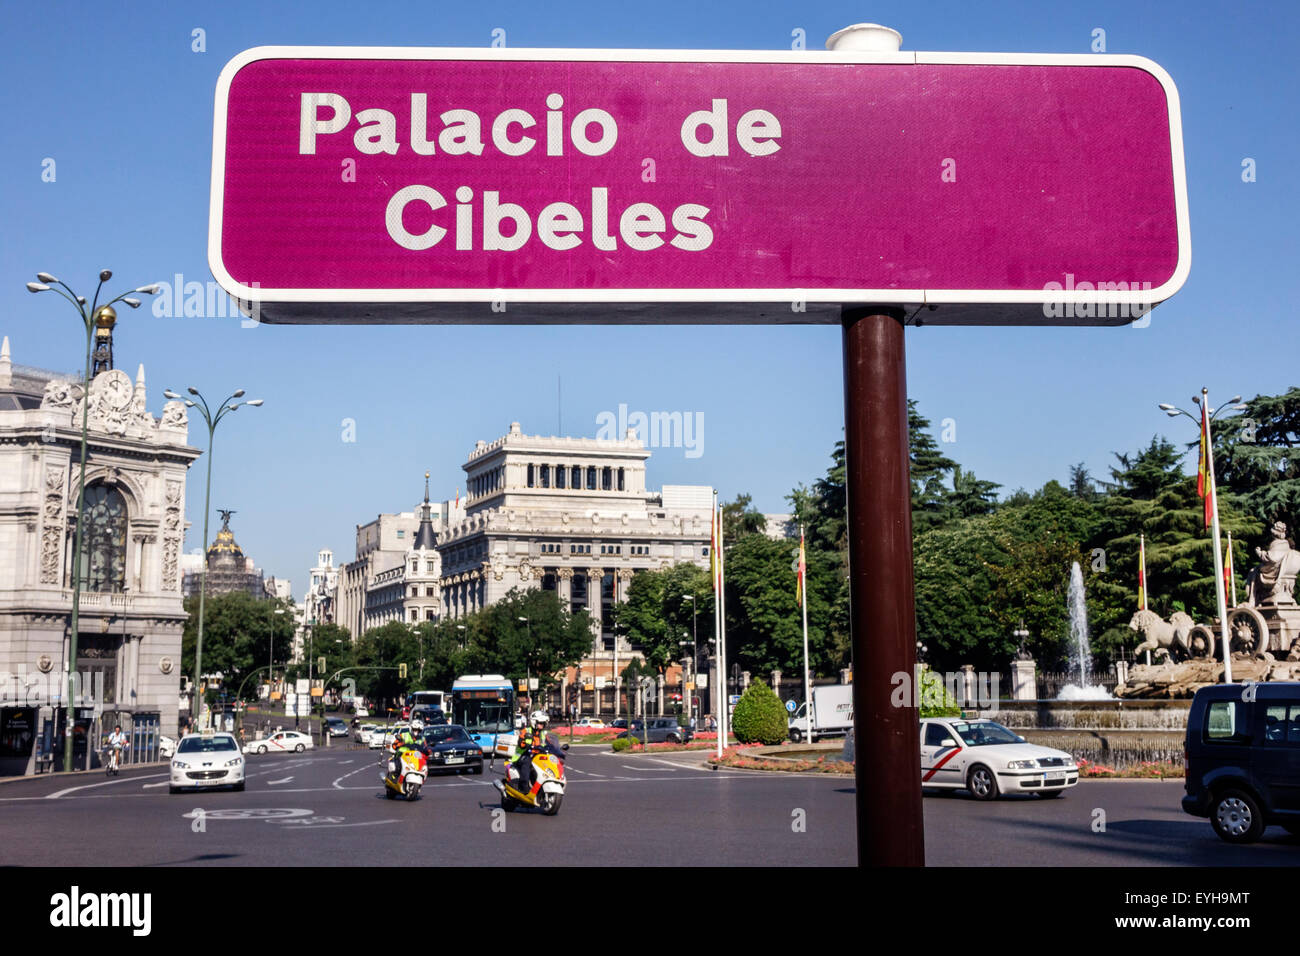 Madrid Spagna,Plaza Cibeles,Palacio de Cibeles,Palacio de Comunicaciones,registro del patrimonio spagnolo,proprietà culturale,segno,posizione,cerchio del traffico,Spagna Foto Stock